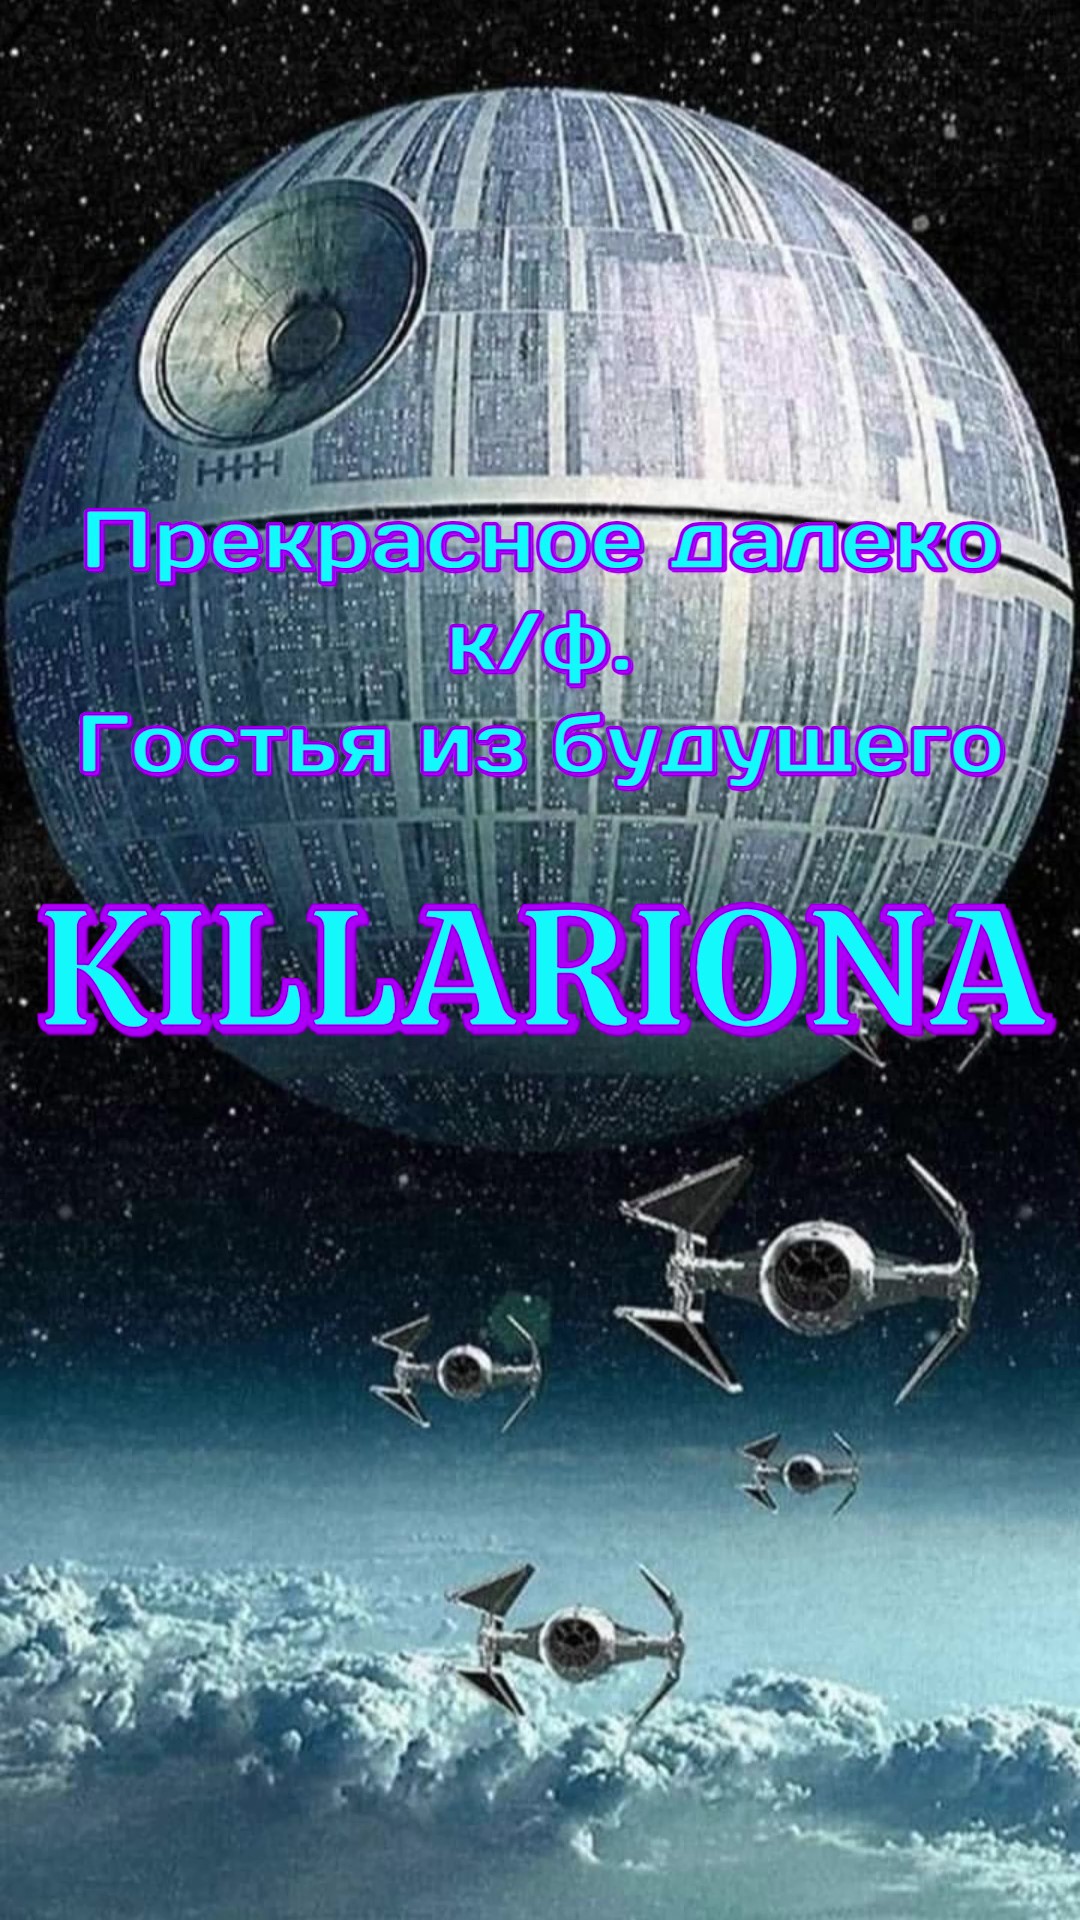 KILLARIONA — «Прекрасное далеко» (к/ф. Гостья из будущего) Татьяна Дасковская (Cover) #killariona